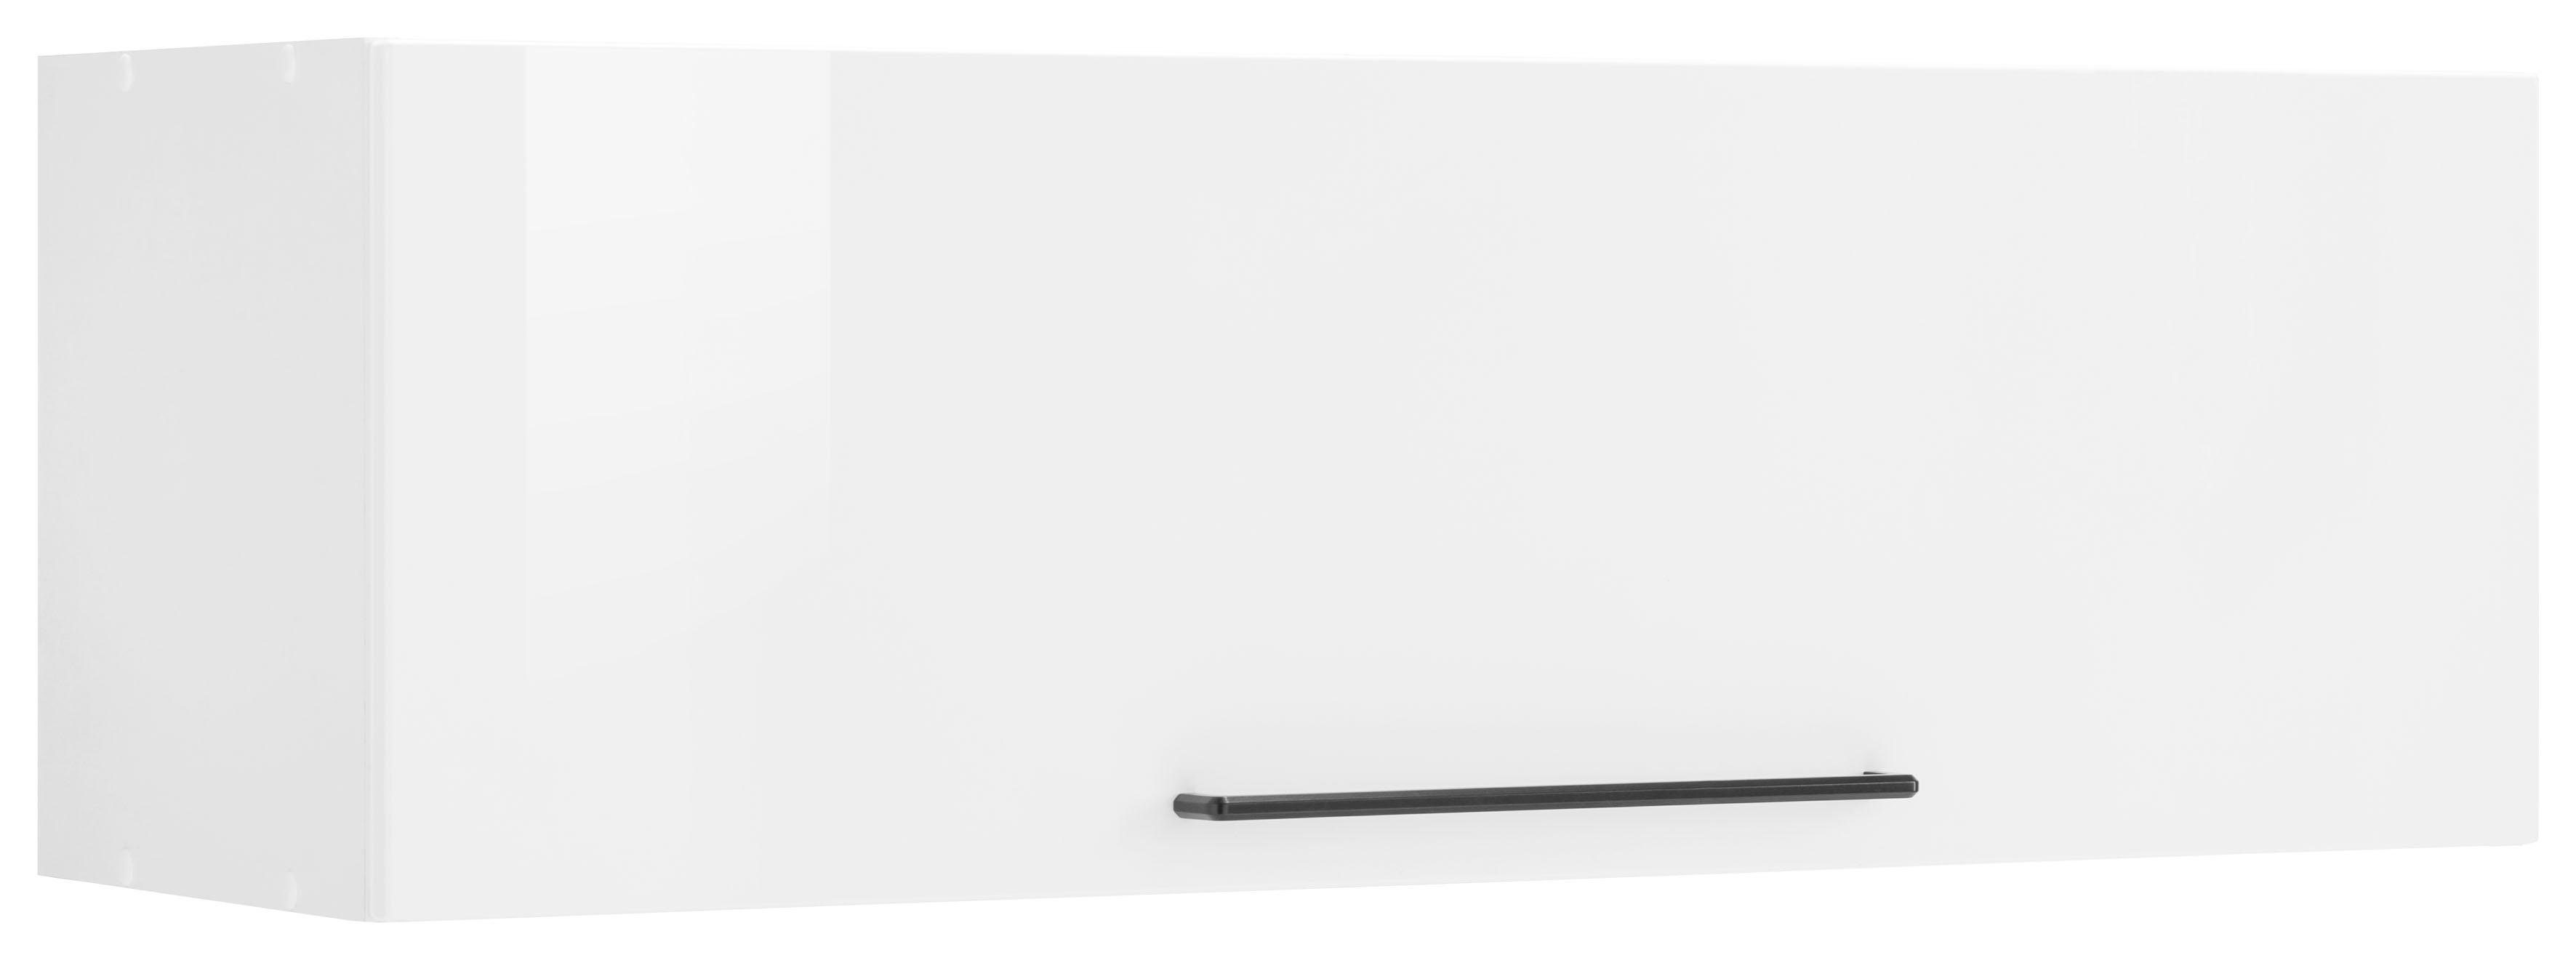 HELD MÖBEL Klapphängeschrank Tulsa 100 cm breit, mit 1 Klappe, schwarzer Metallgriff, MDF Front weiß Hochglanz | weiß